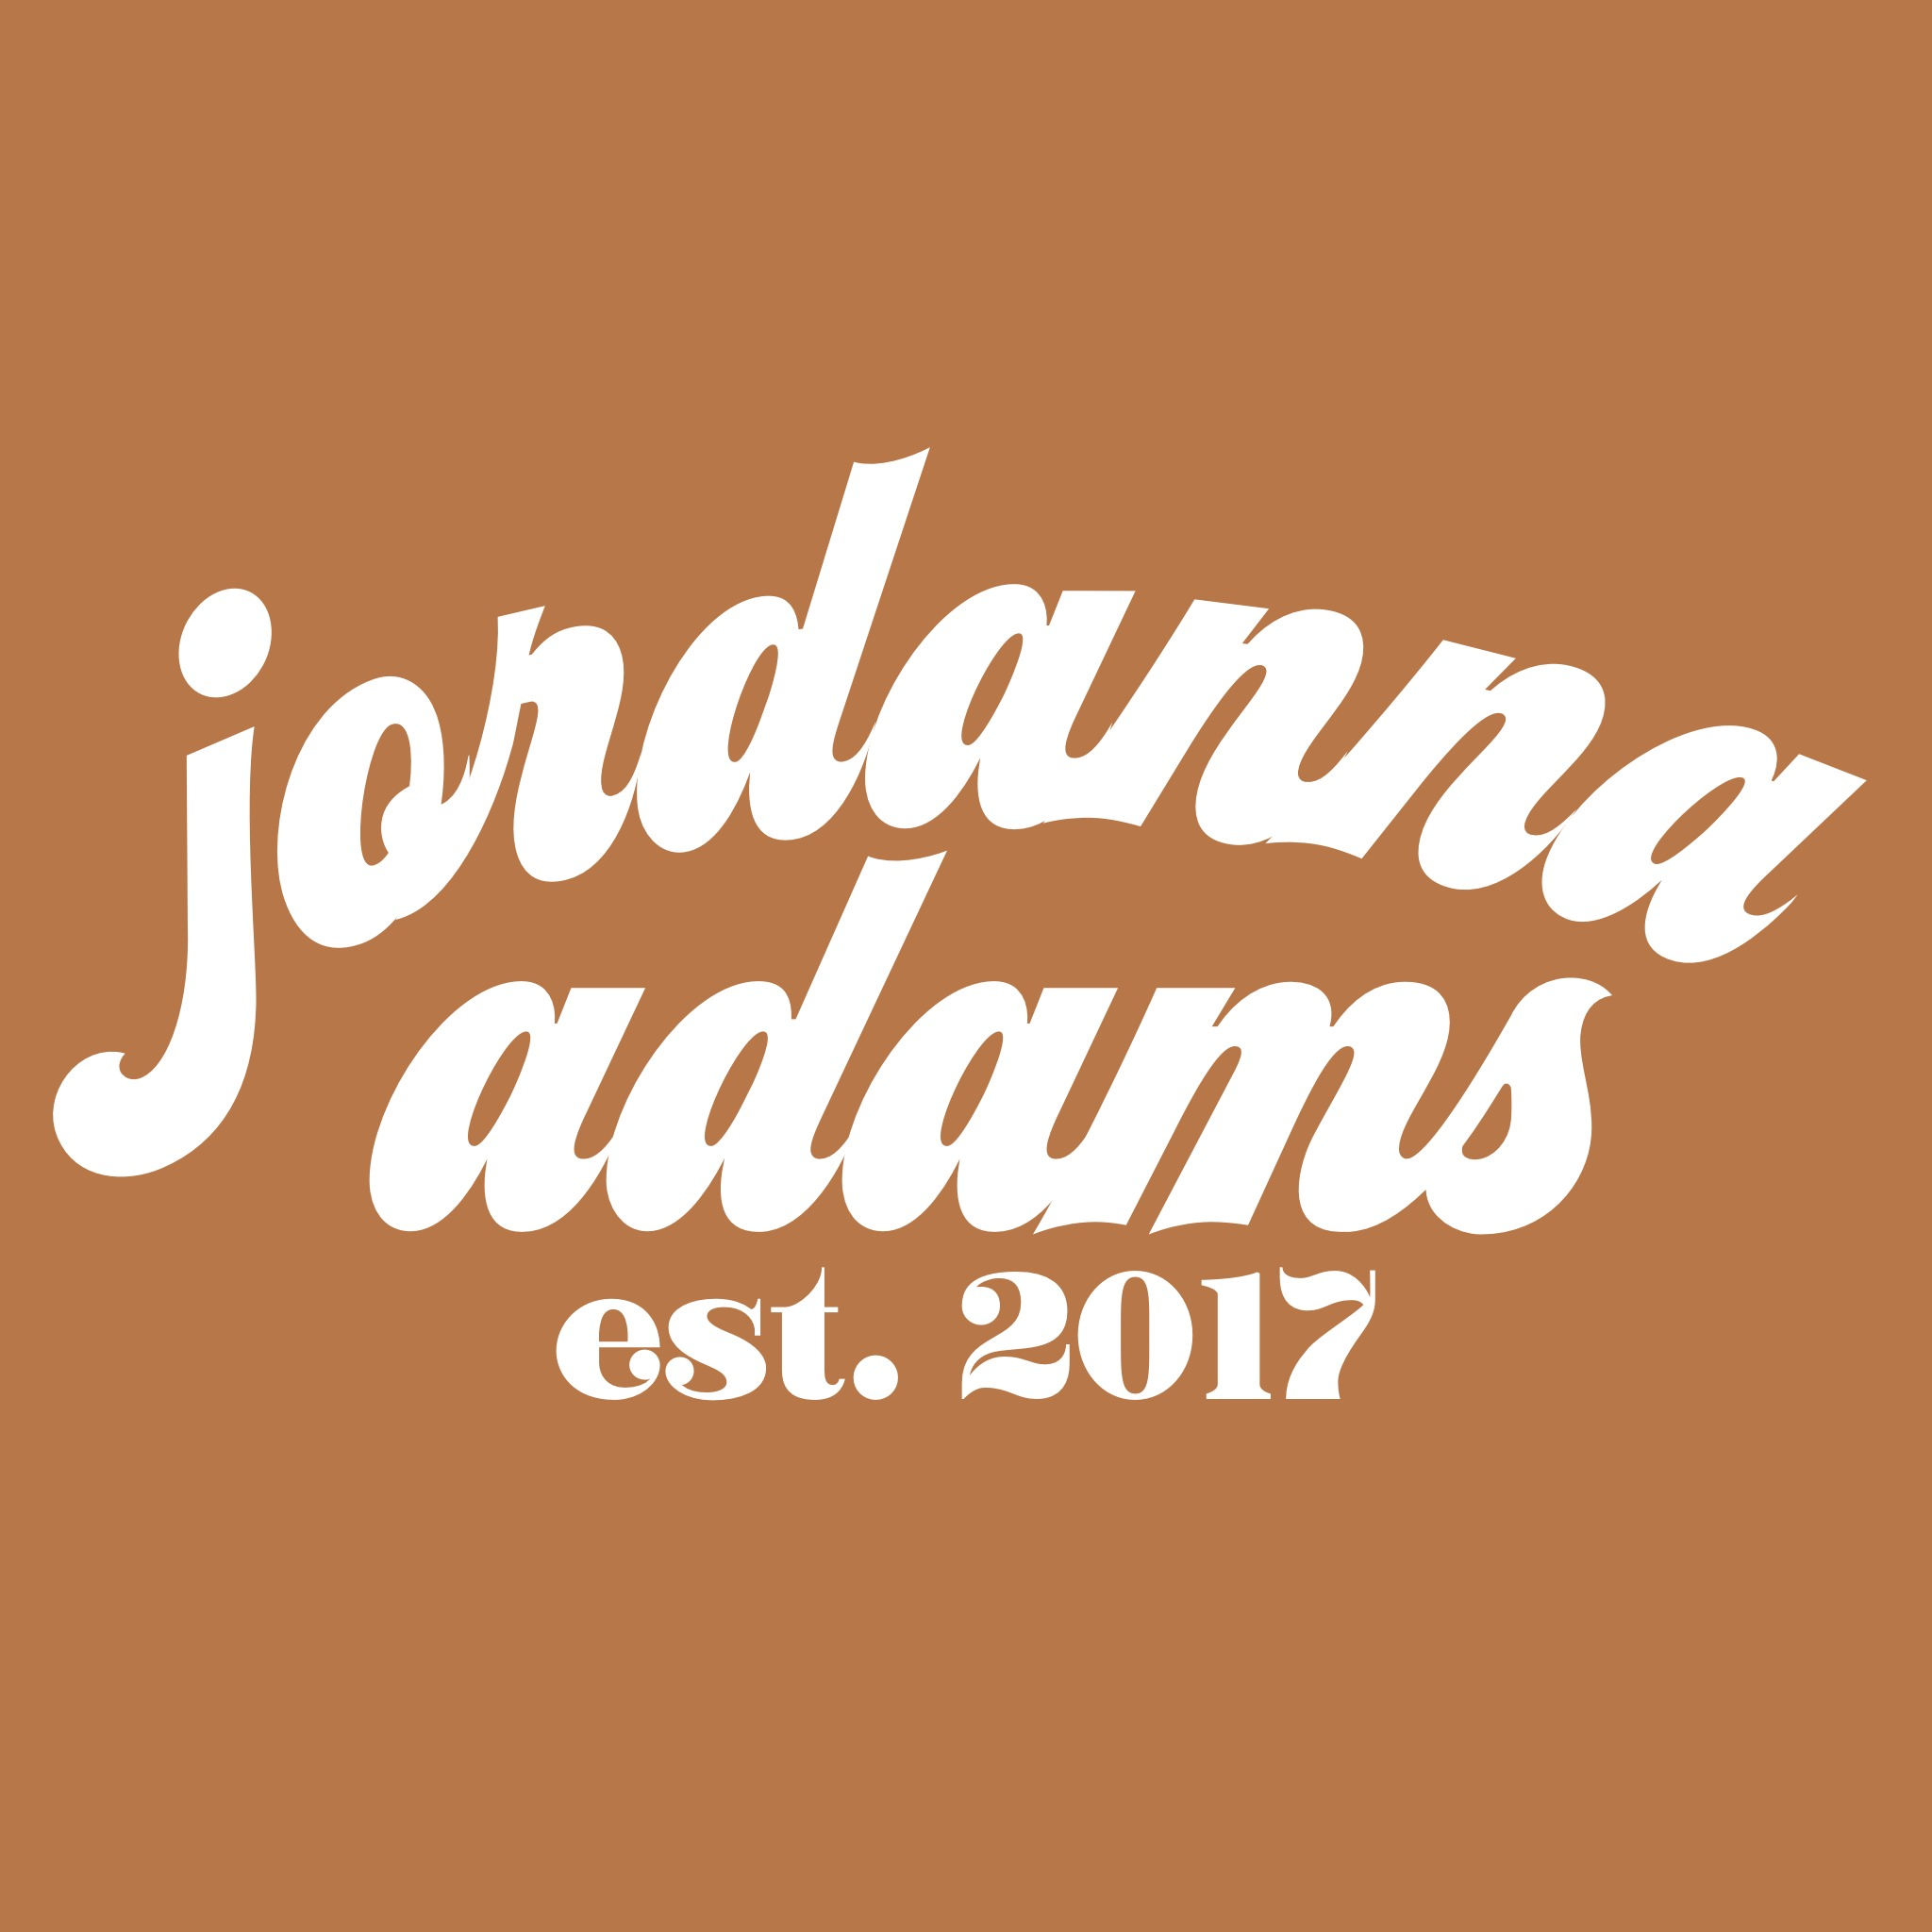 Jordanna Adams Boutique